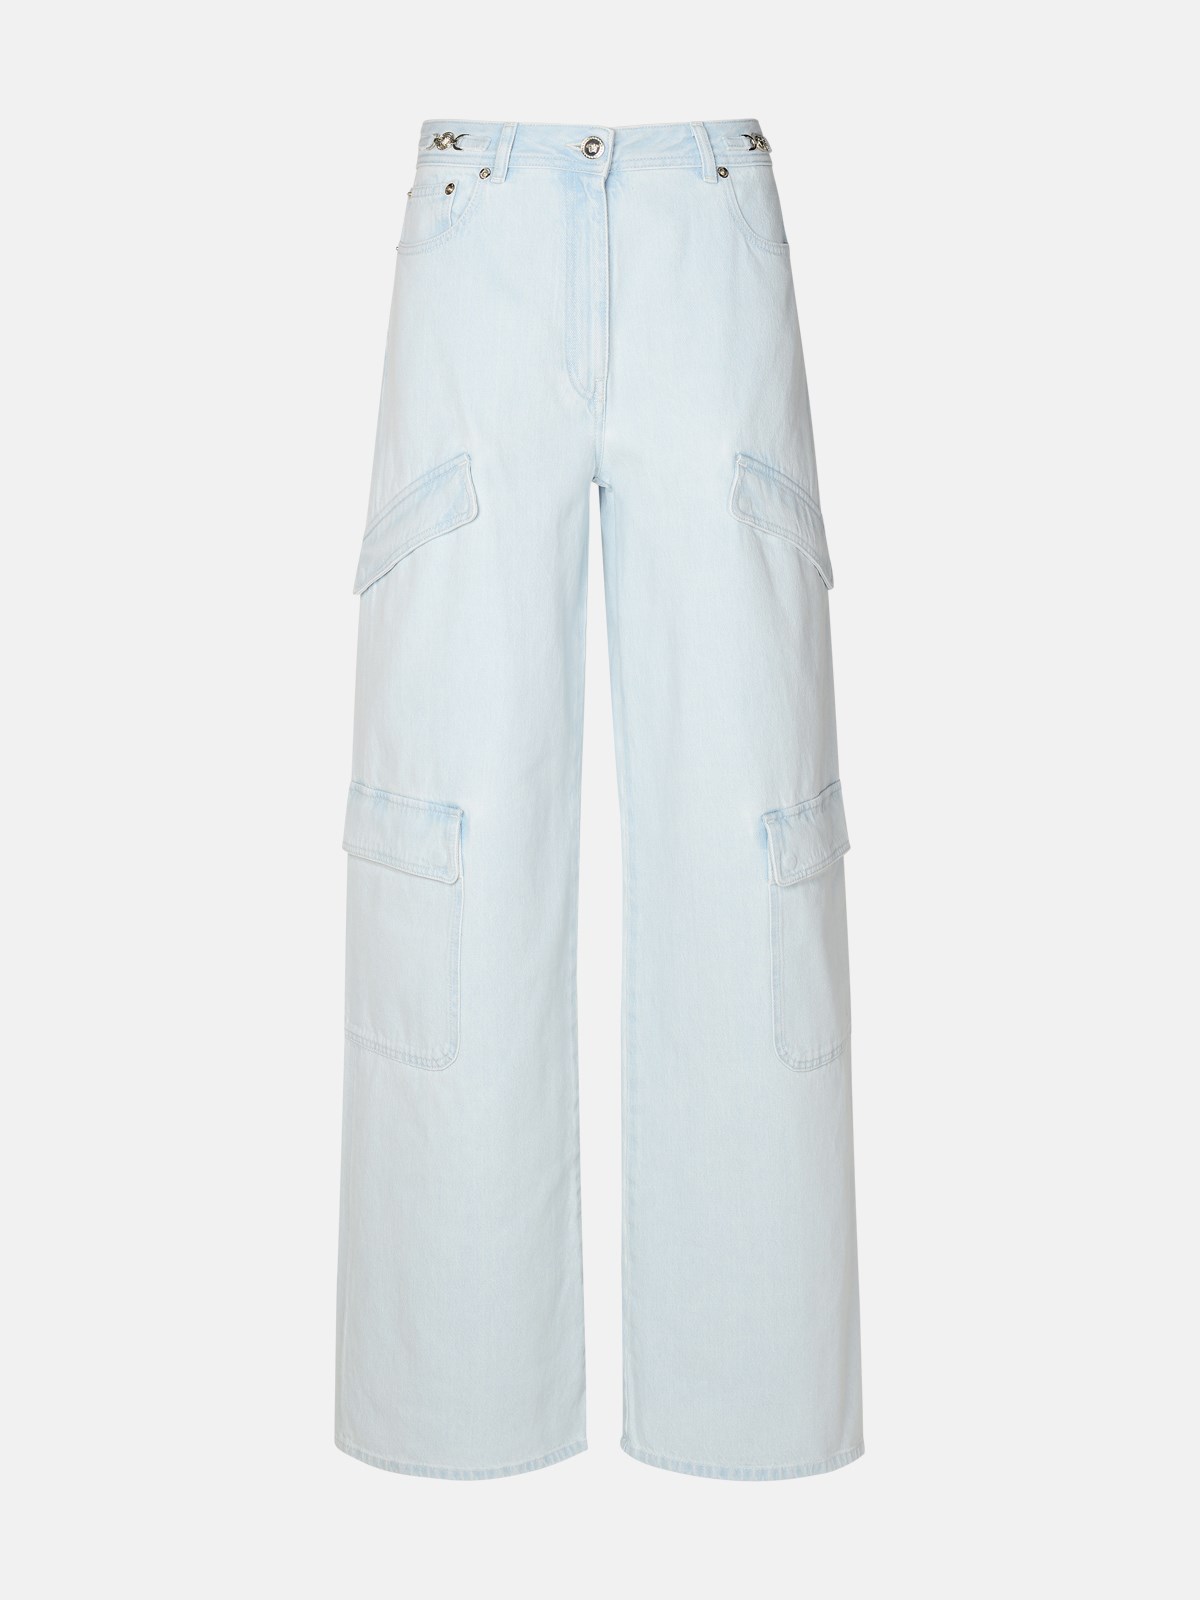 Shop Versace Light Blue Cotton Cargo Jeans